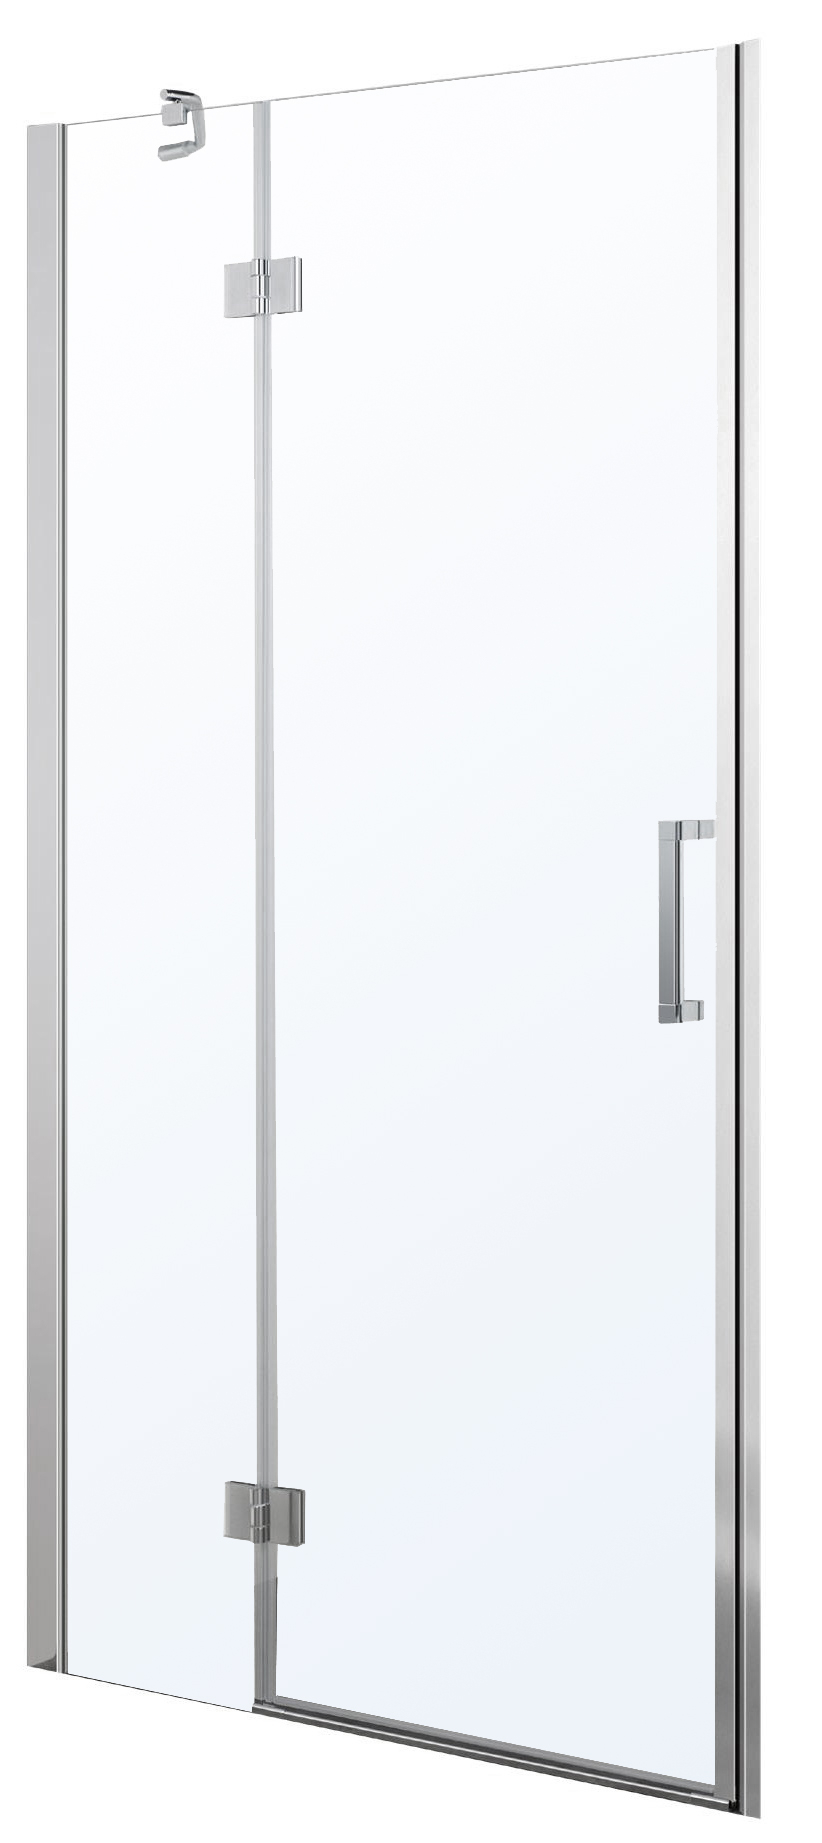 Двері душової кабіни Eger 599-701(h) 100x195